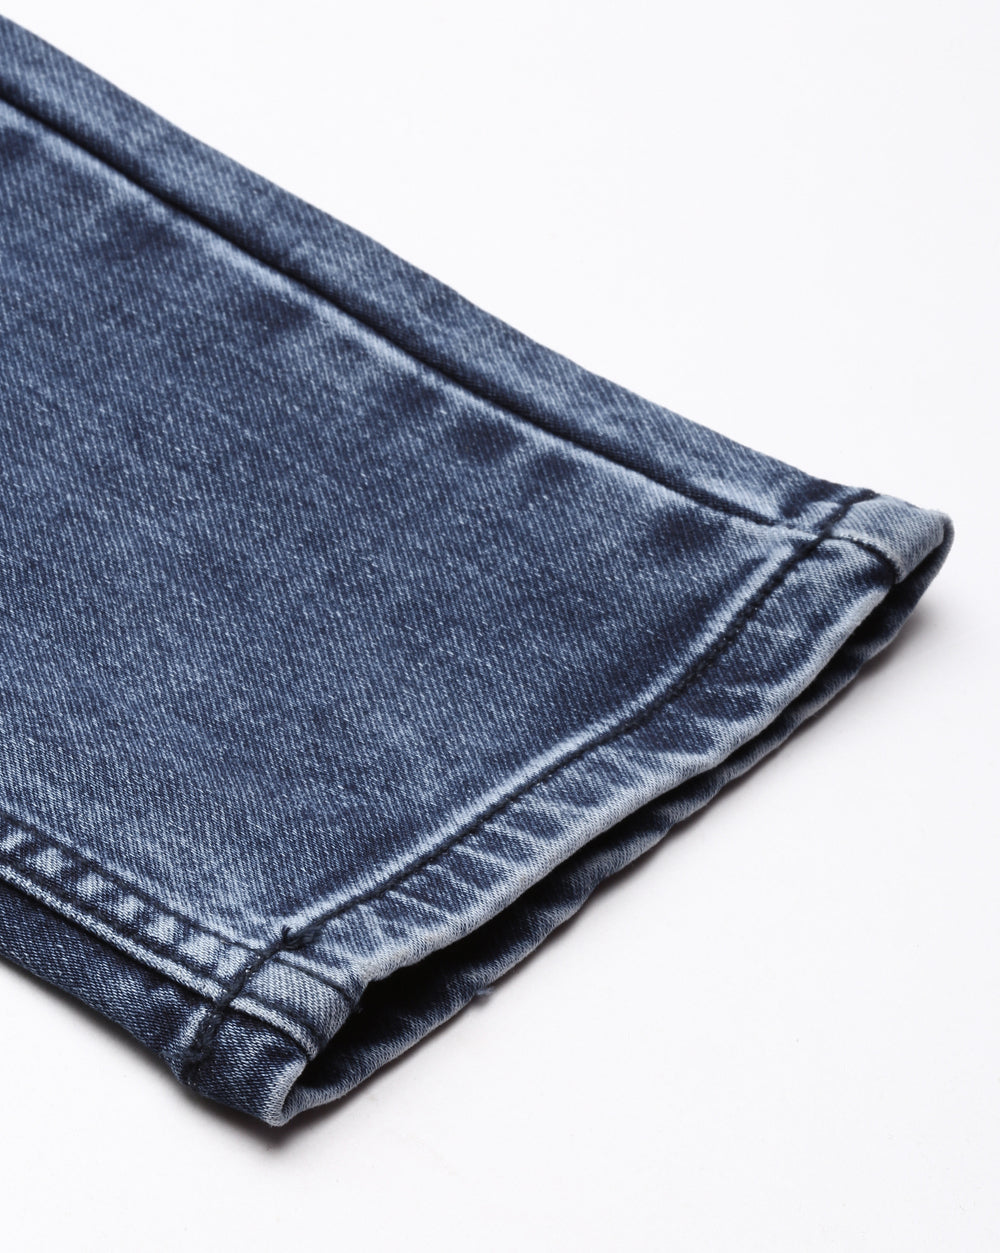 DISTRESSED BLUE DENIM Jeans for Men 